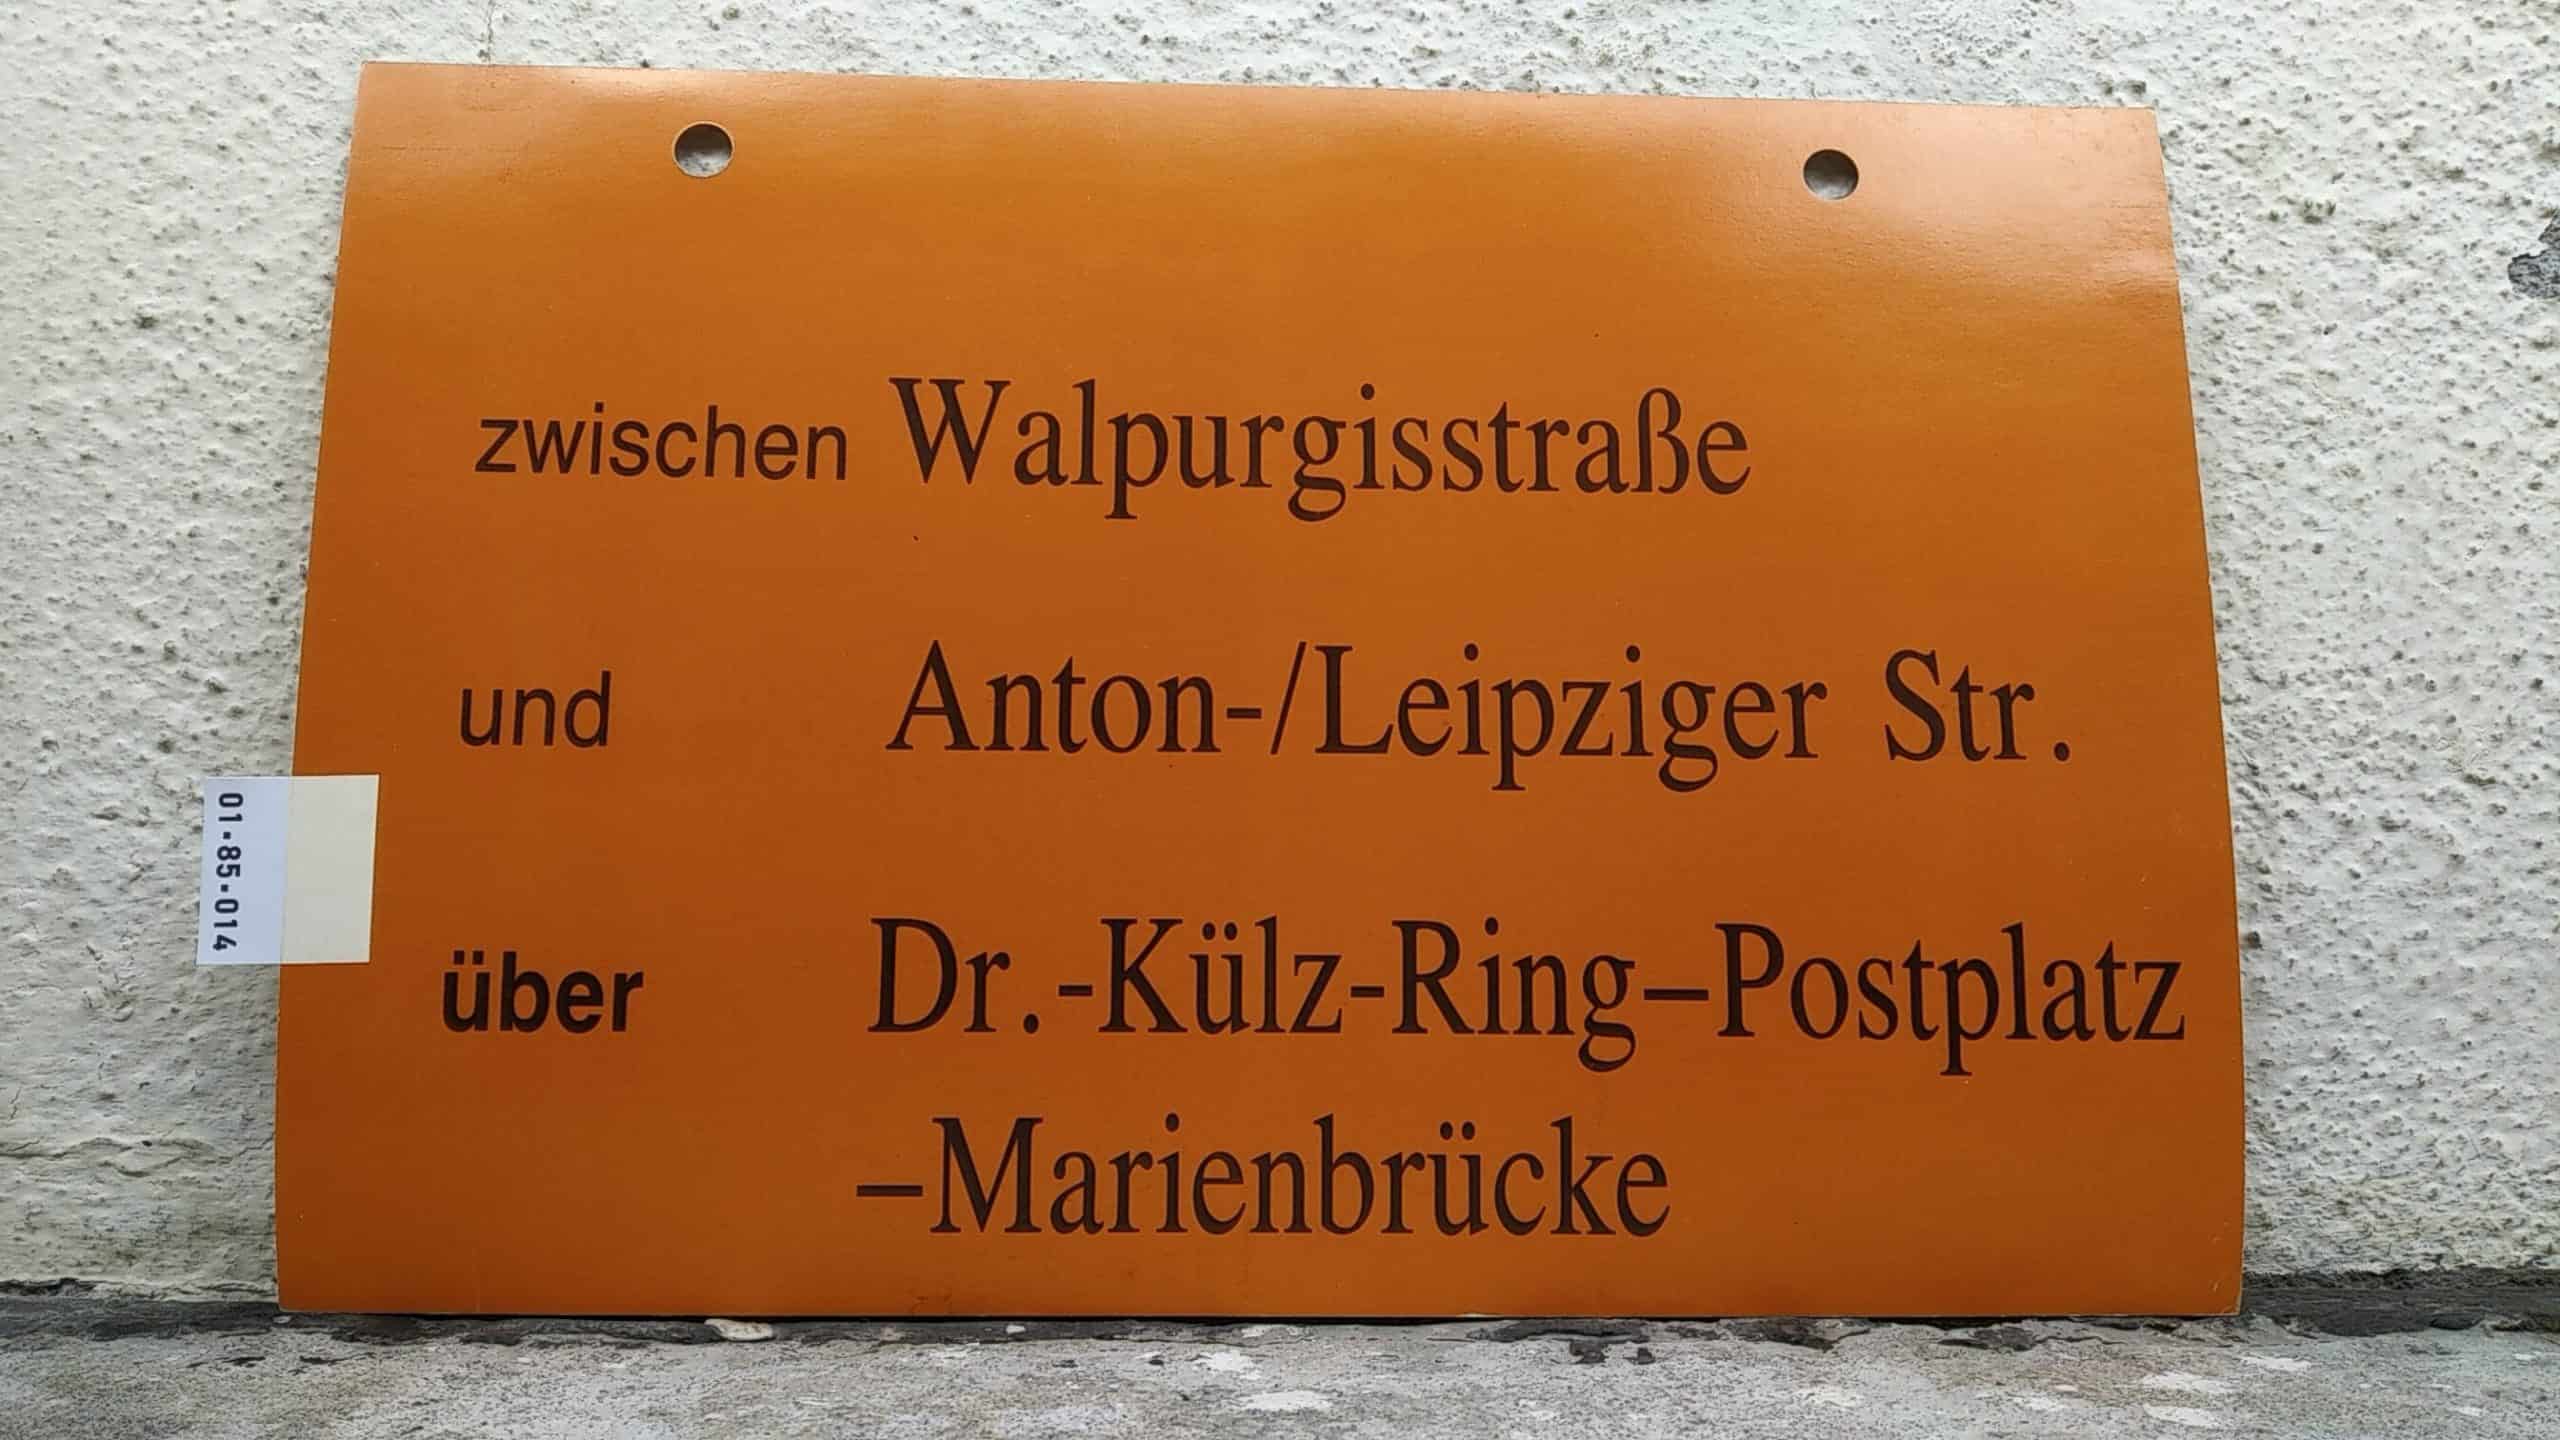 Ein seltenes Straßenbahn-Umleitungsschild aus Dresden: zwischen Walpurgisstraße und Anton-/Leipziger Str. über Dr.-Külz-Ring-Postplatz -Marienbrücke